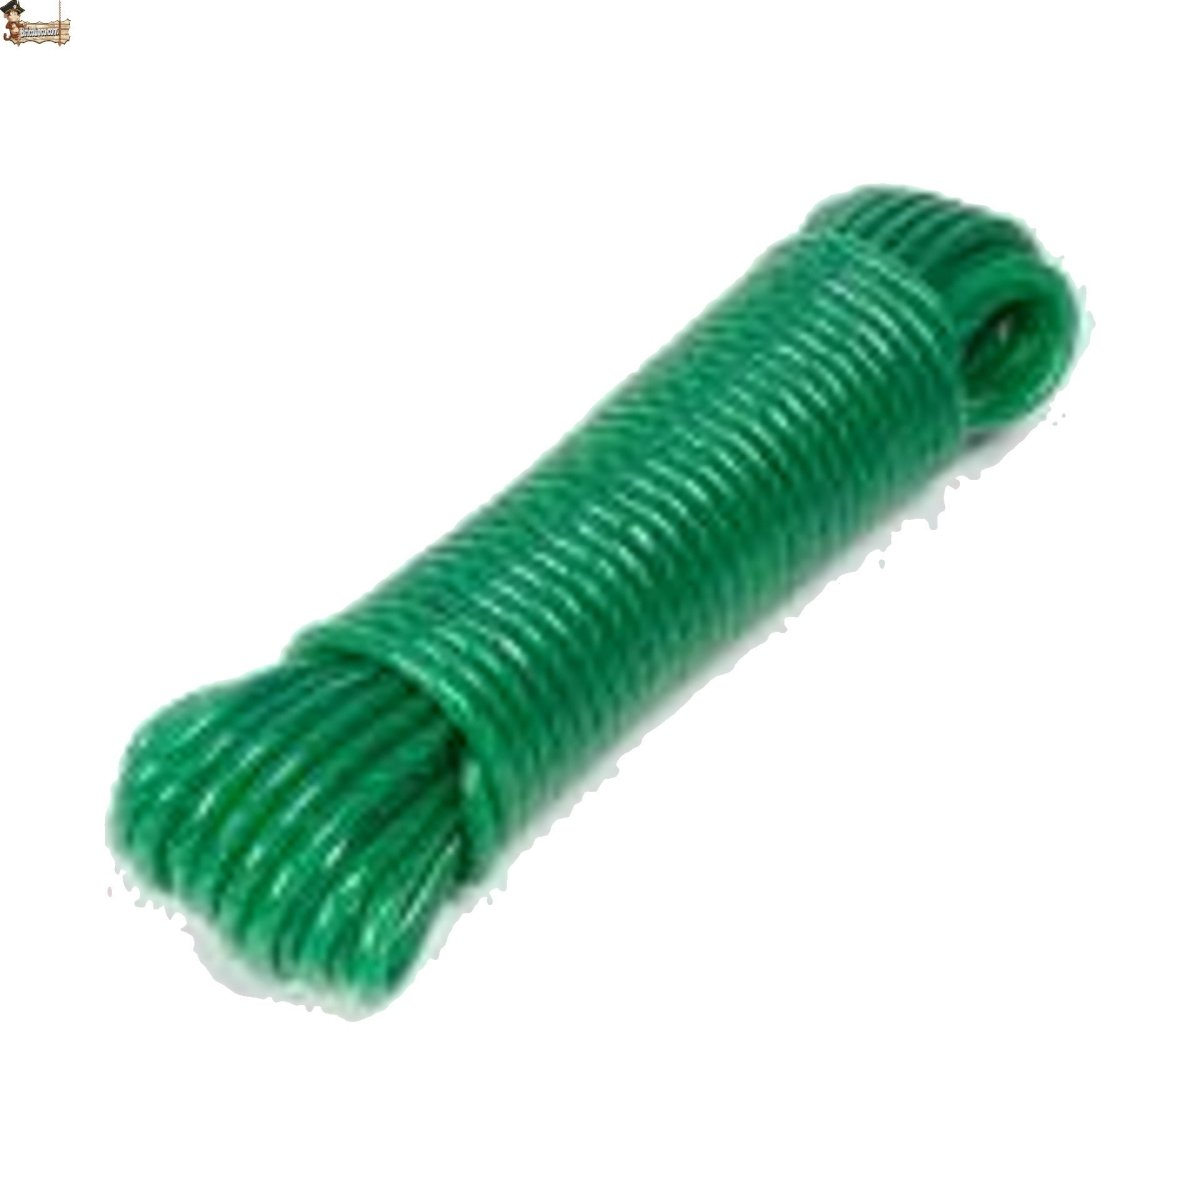 ActivoTex Cuerda Tendedero Exterior. 25m Nylon Resistente a la Intemperie  Cuerda de Tender Ropa Exterior resiste el Peso de Ropa Cuerdas Tendedero